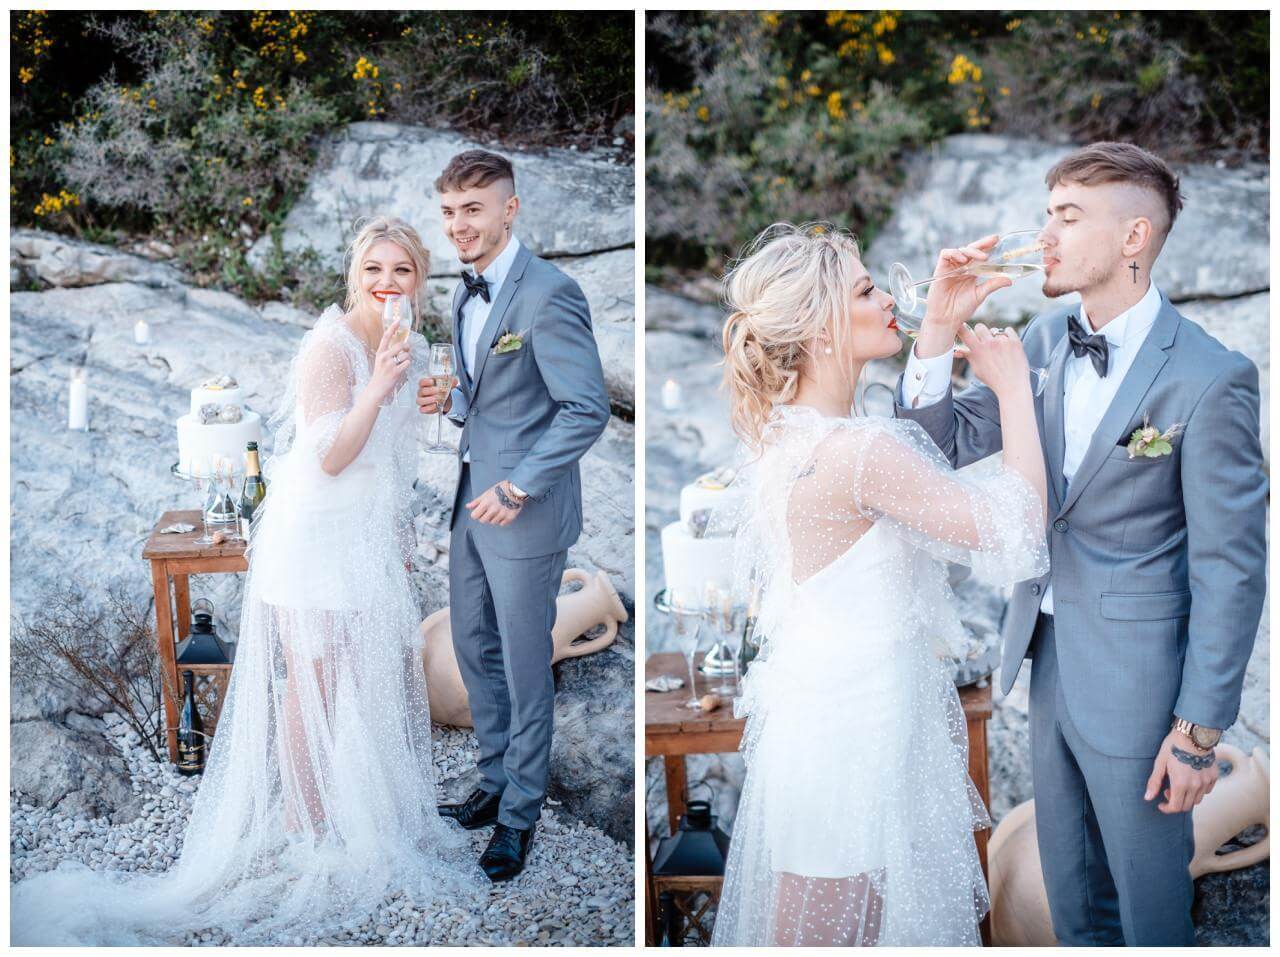 Hochzeit in Kroatien Paarshooting blau und weiß Wedding Kroatien, wedding in croatia,hochzeitsplanerin kroatien, hochzeit in kroatien